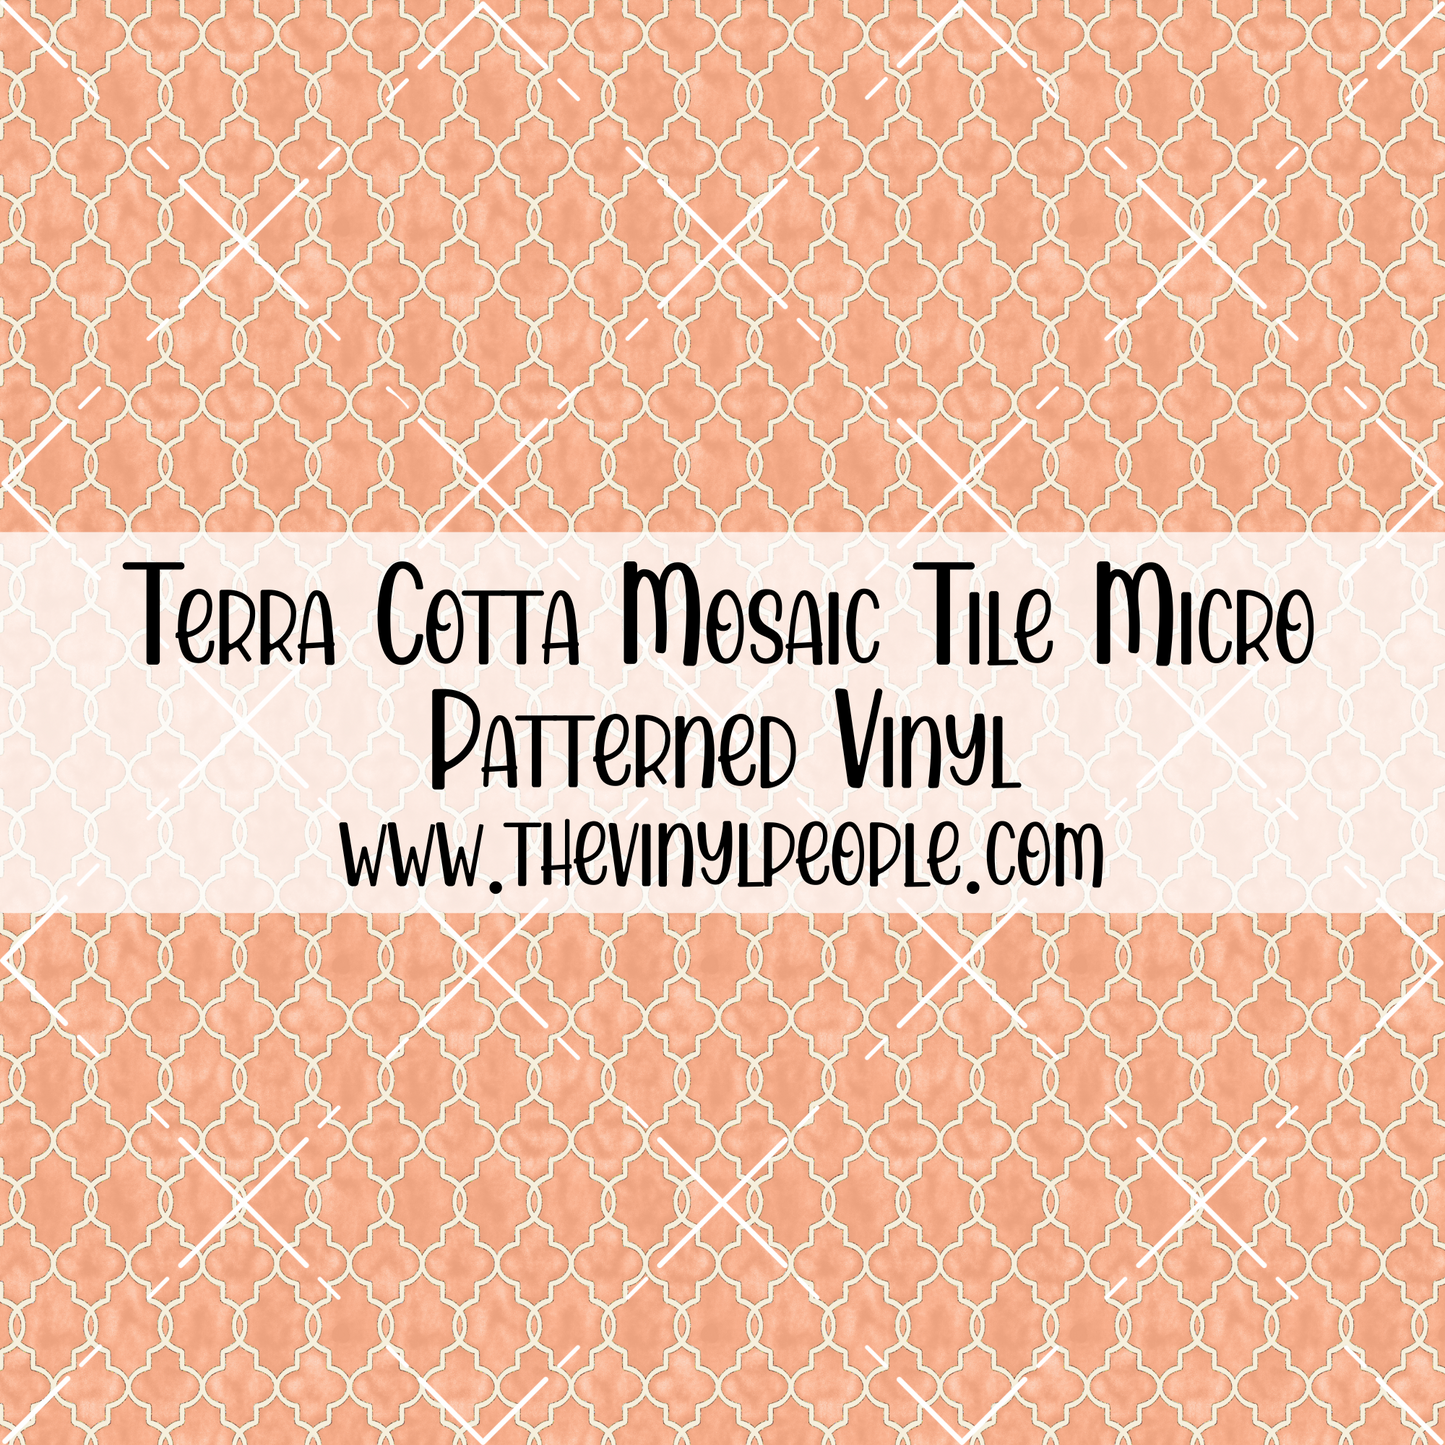 Terra Cotta Mosaic Tile Patterned Vinyl